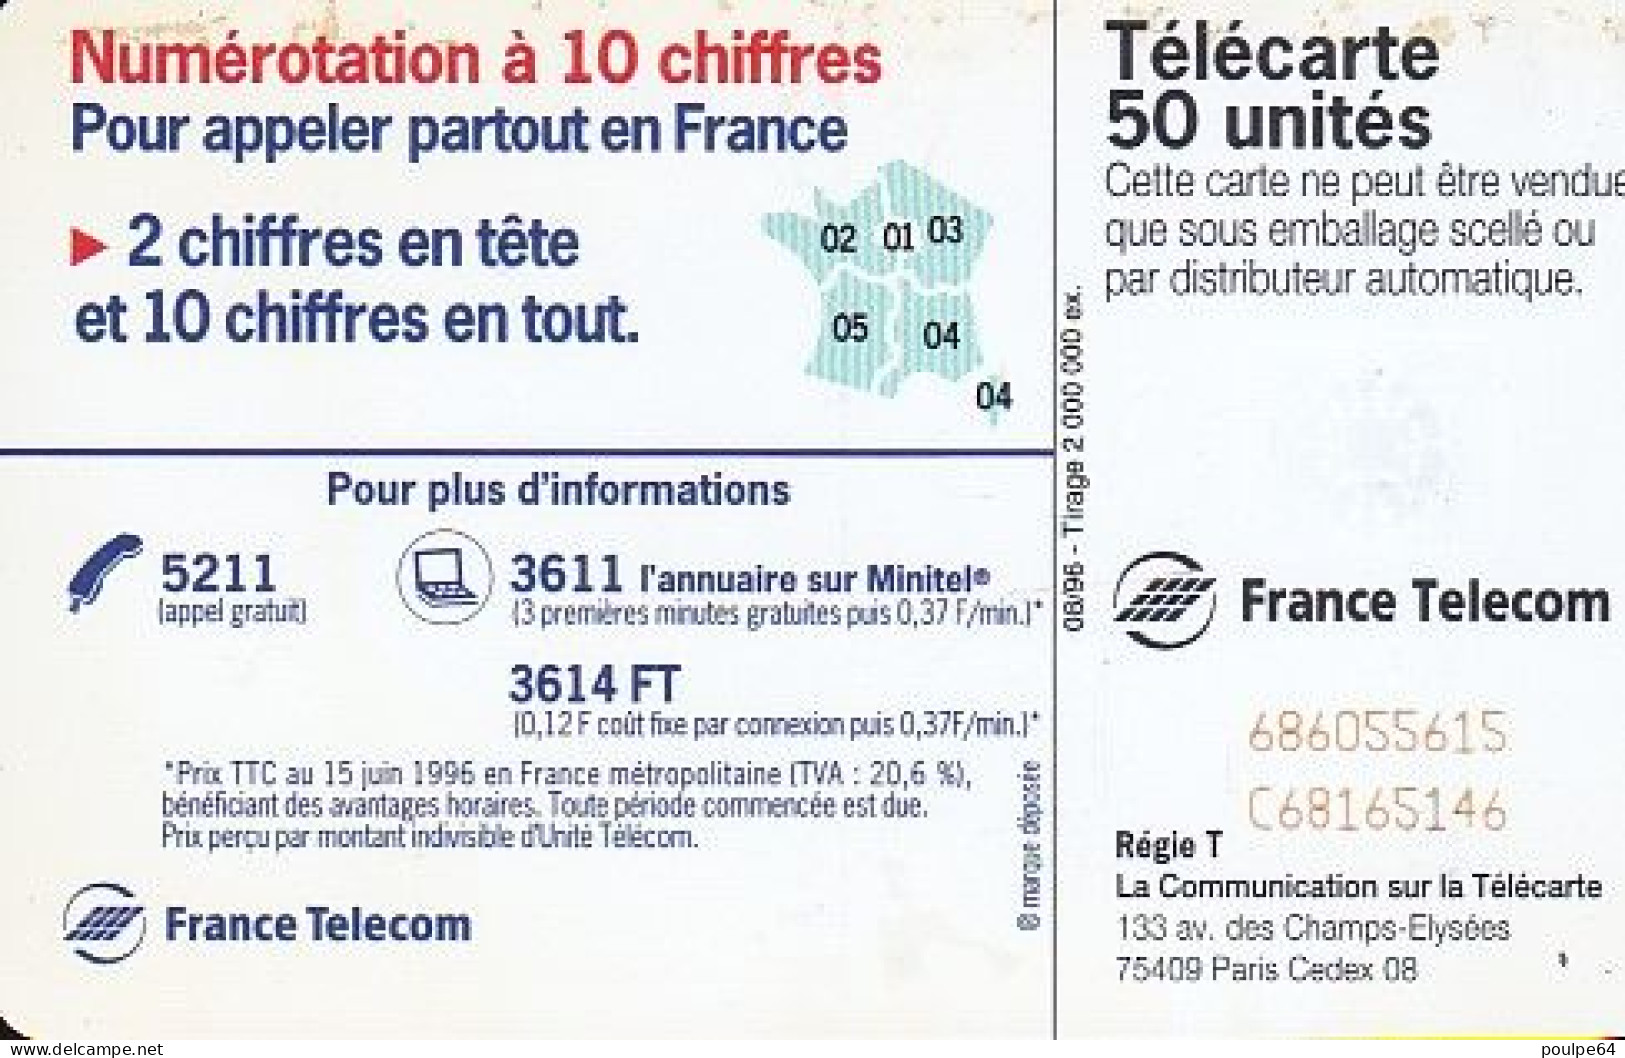 F688 08/1996 - LE 00 REMPLACE LE 19 - 50 SC7 - 1996